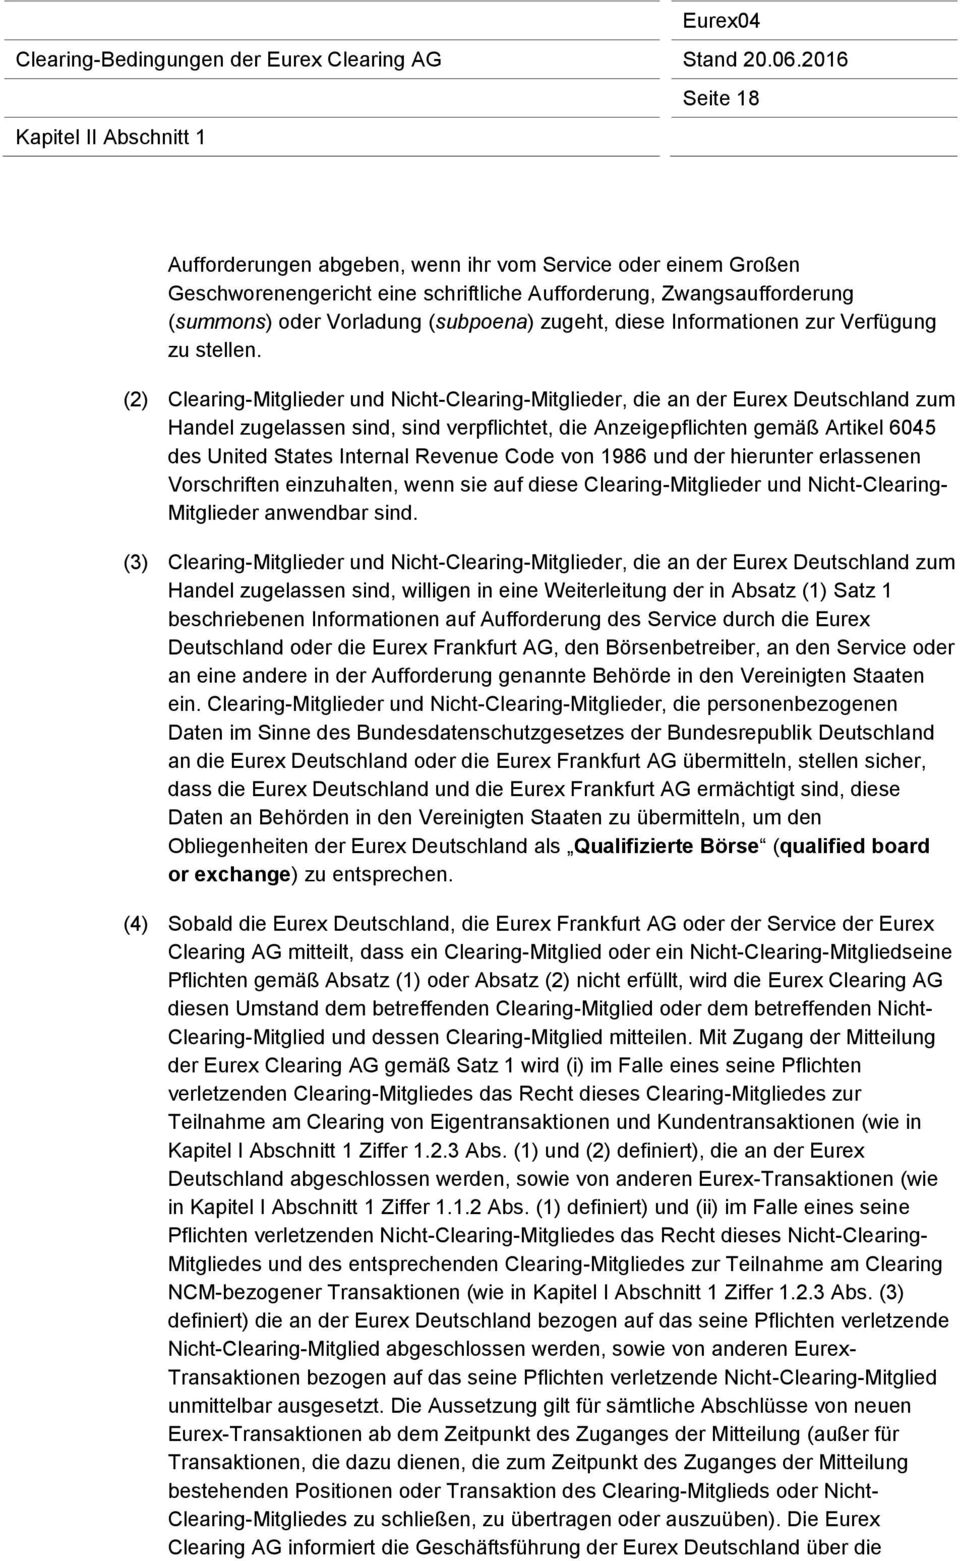 (2) Clearing-Mitglieder und Nicht-Clearing-Mitglieder, die an der Eurex Deutschland zum Handel zugelassen sind, sind verpflichtet, die Anzeigepflichten gemäß Artikel 6045 des United States Internal